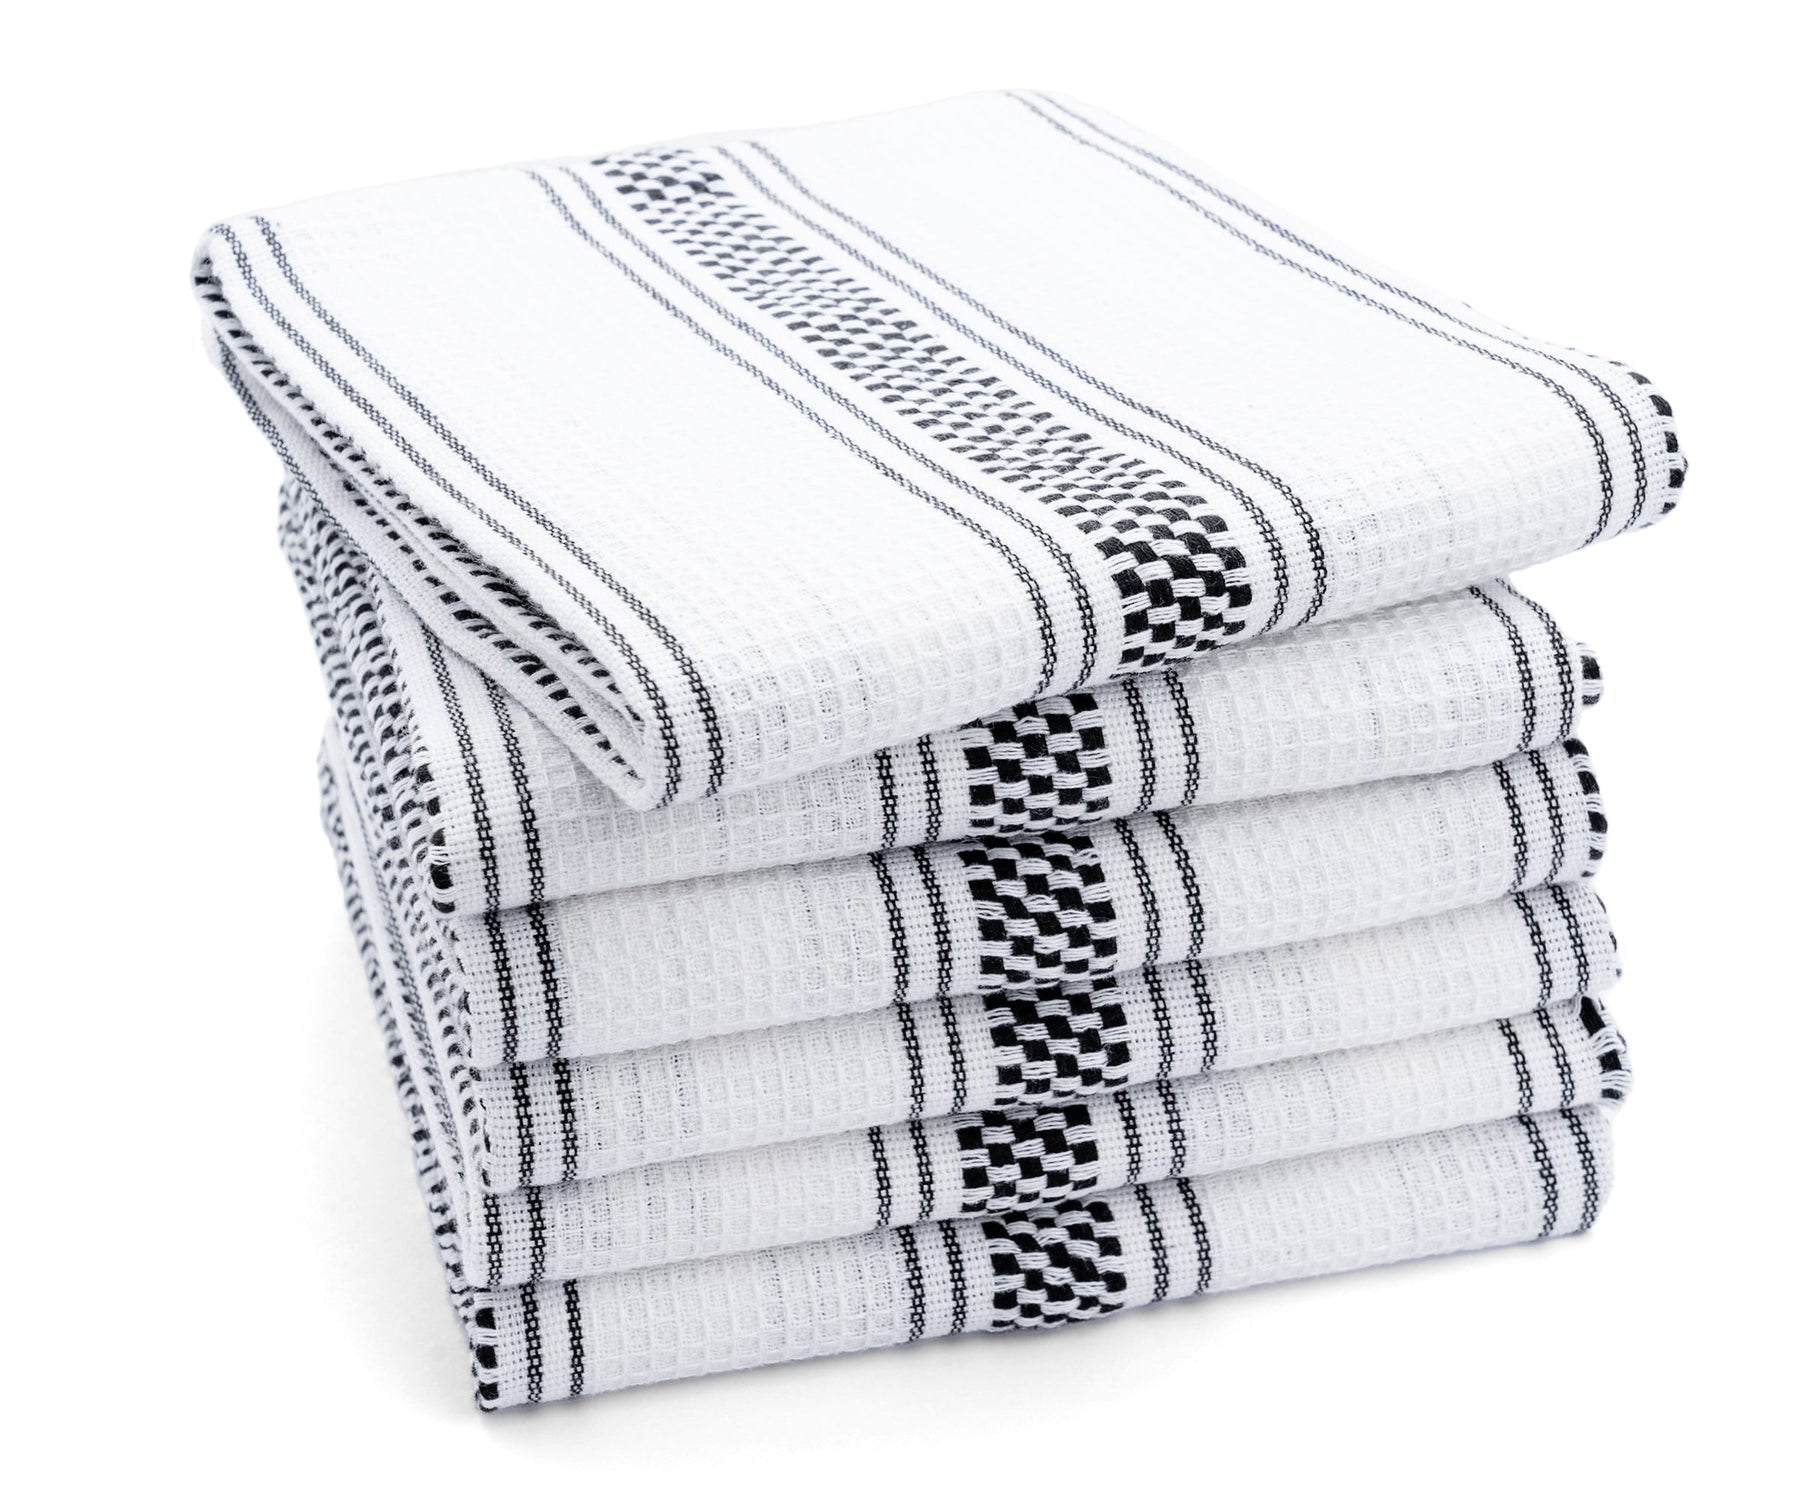 Kitchen Towels- Black & White Stripes